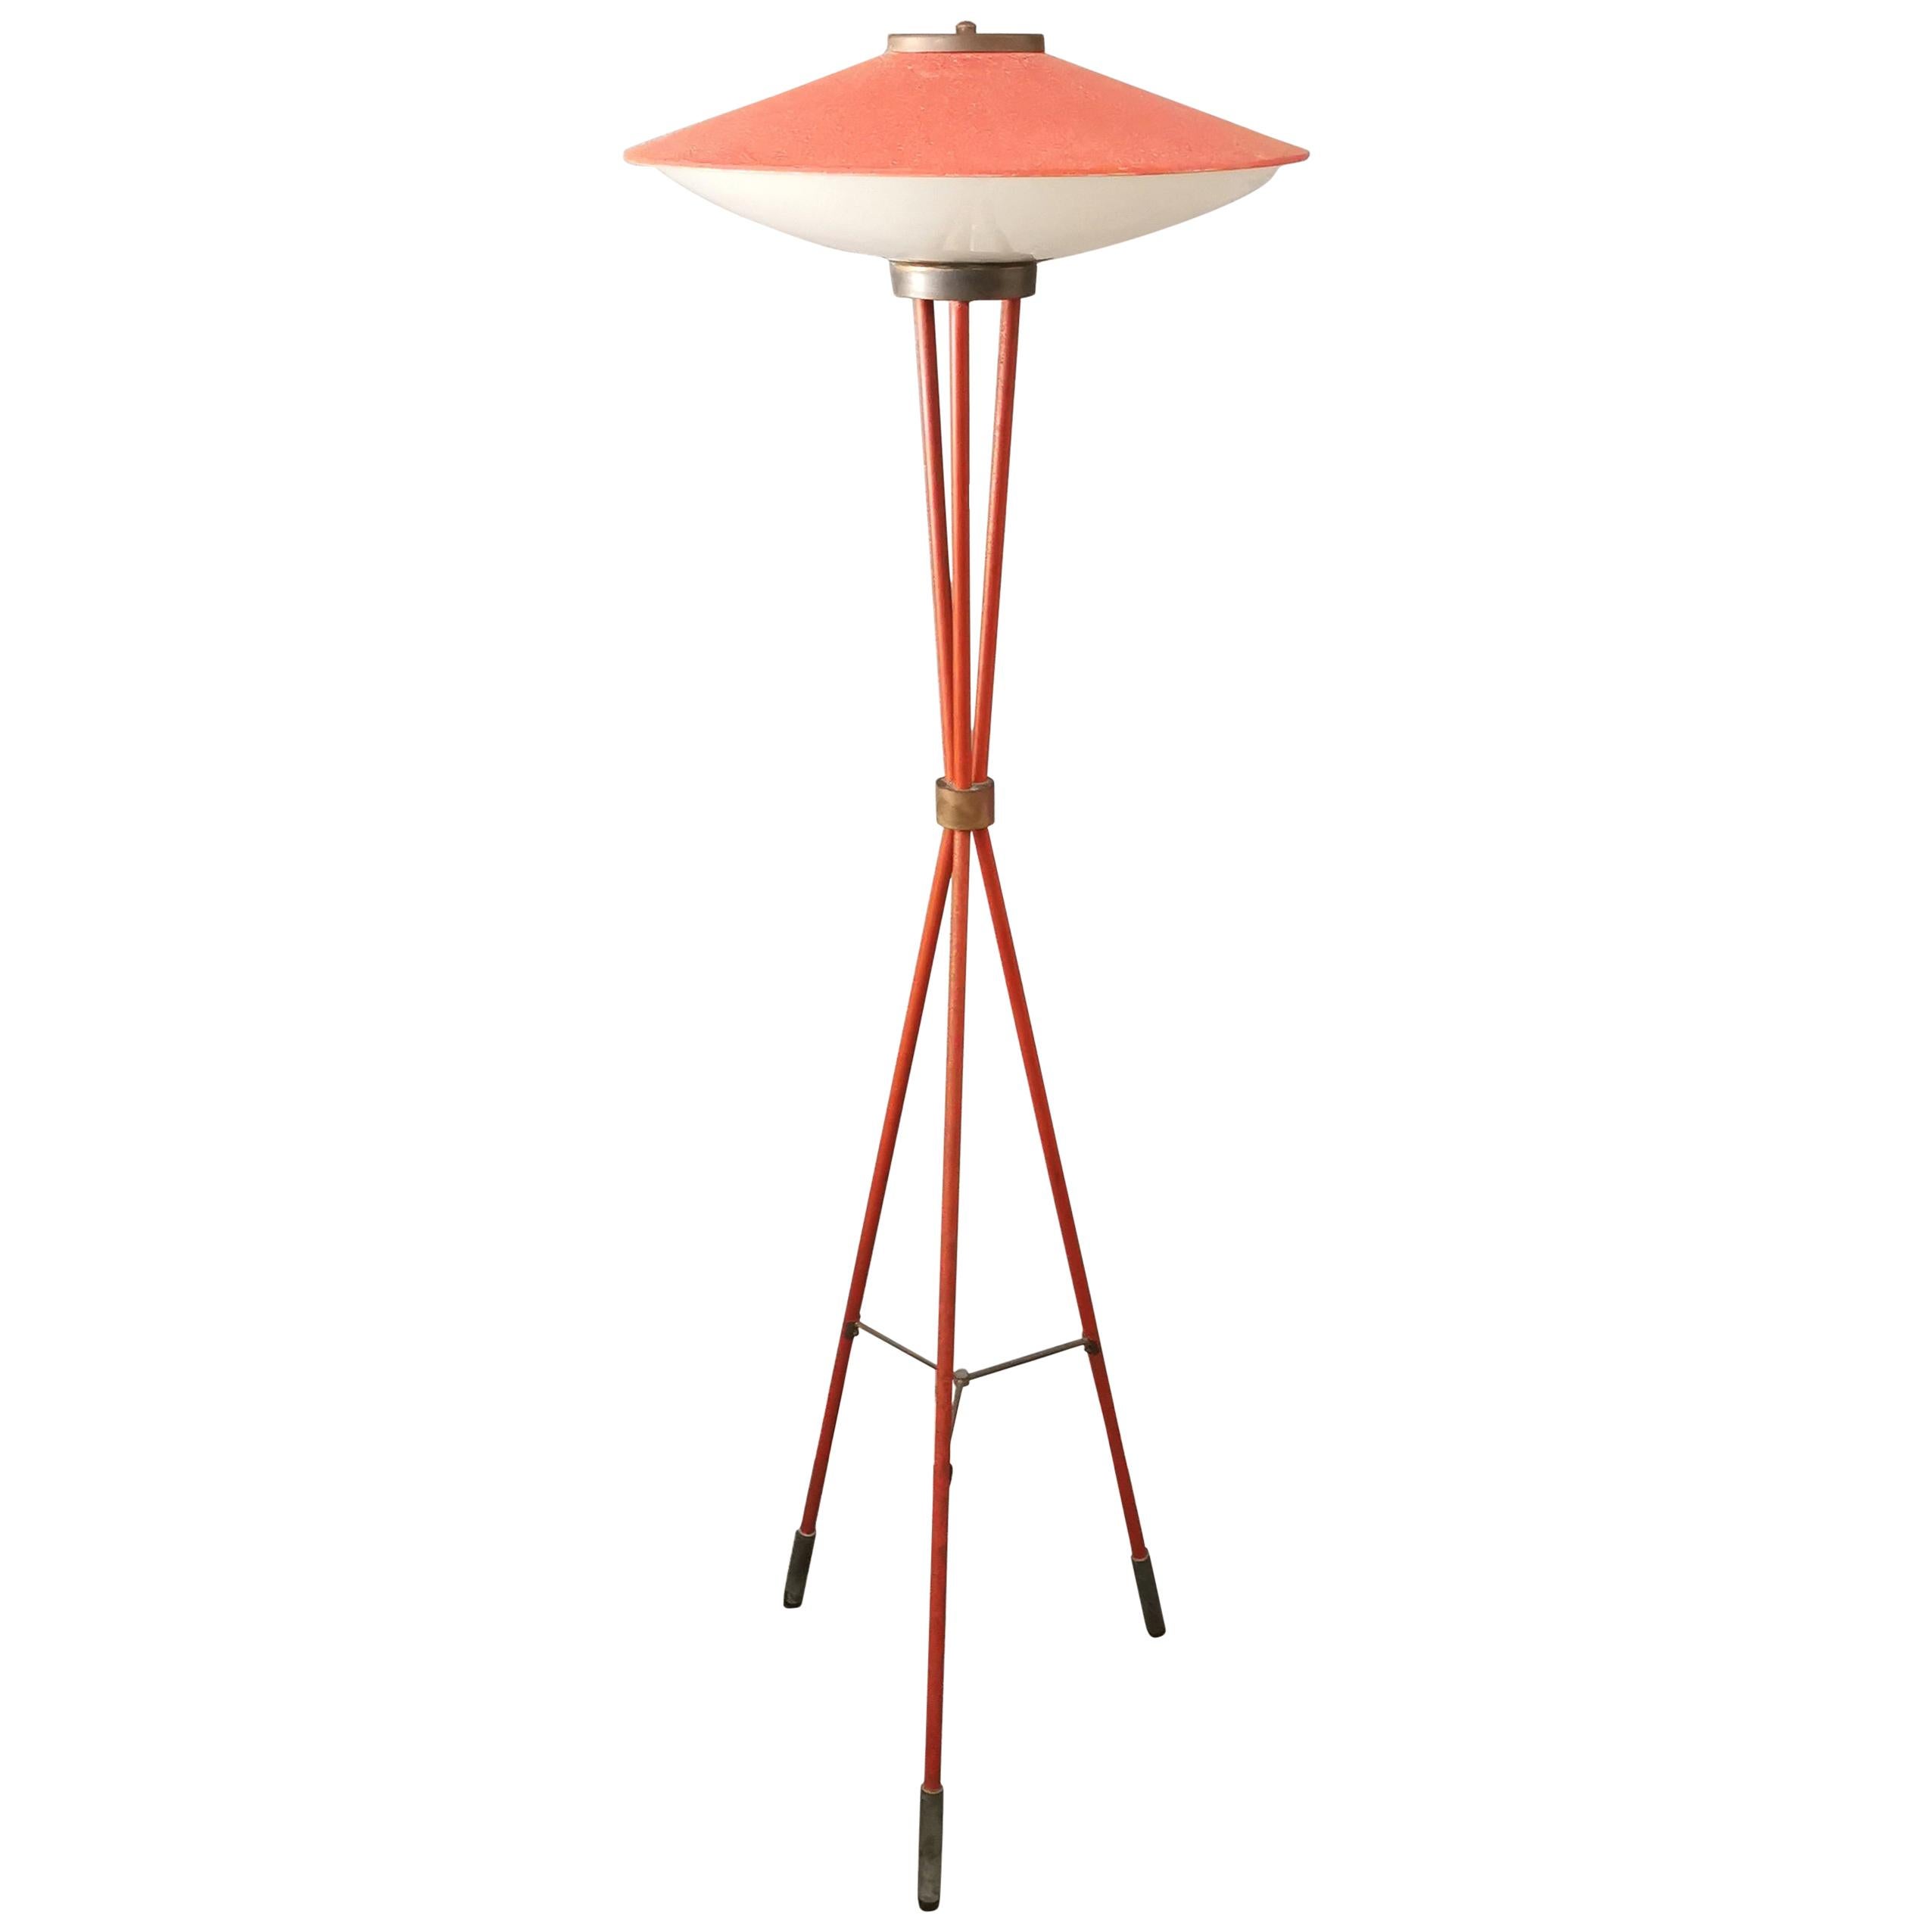 Stilnovo Red Floor Lamp Midcentury in Aluminum Glass Brass, Italy, 1950s